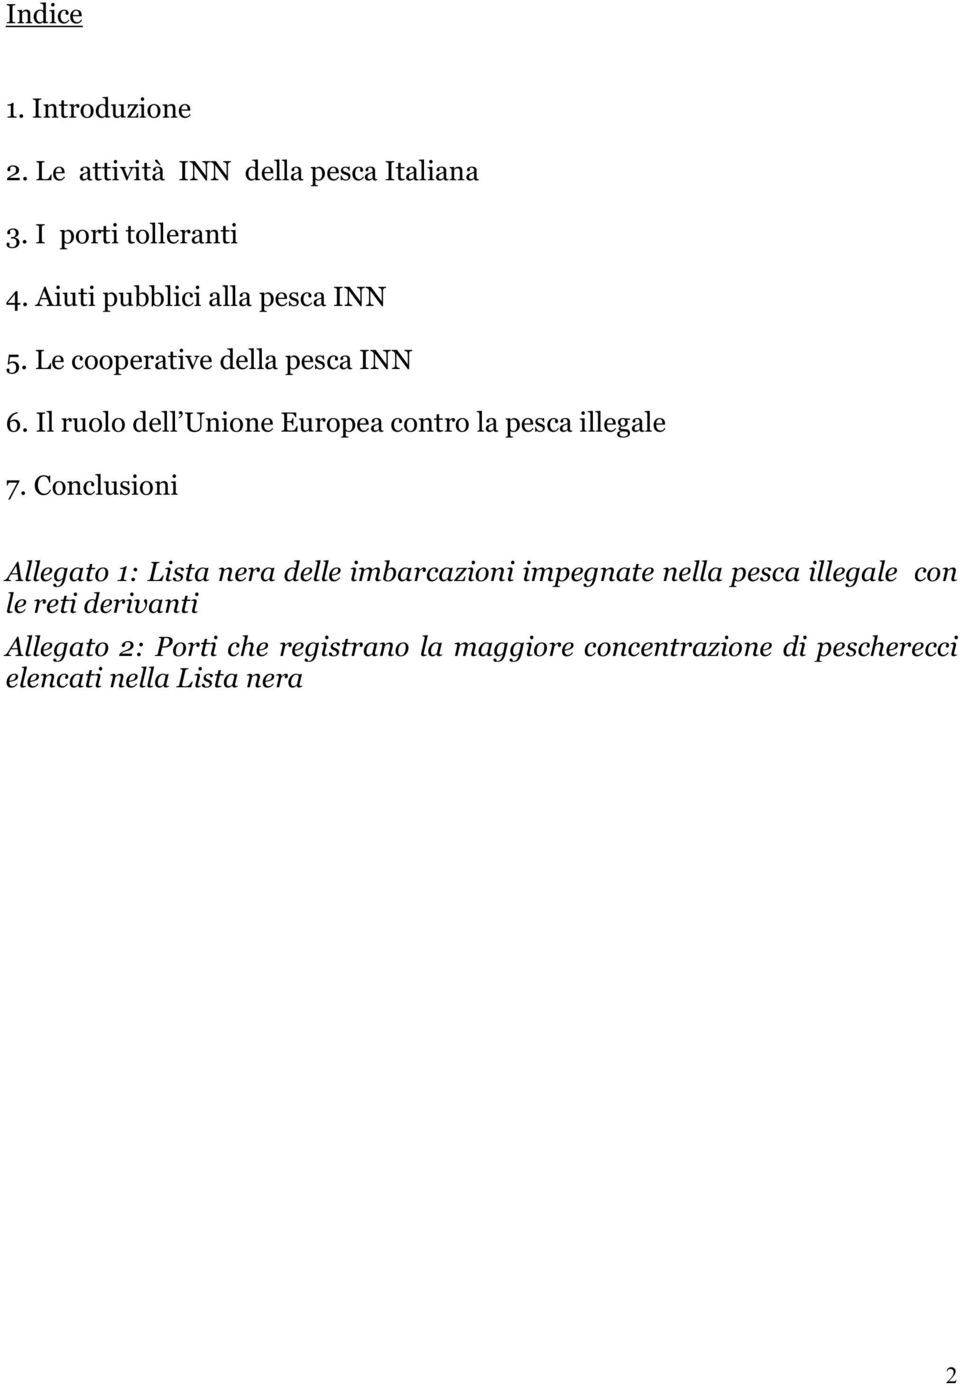 Conclusioni Allegato 1: Lista nera delle imbarcazioni impegnate nella illegale con le reti